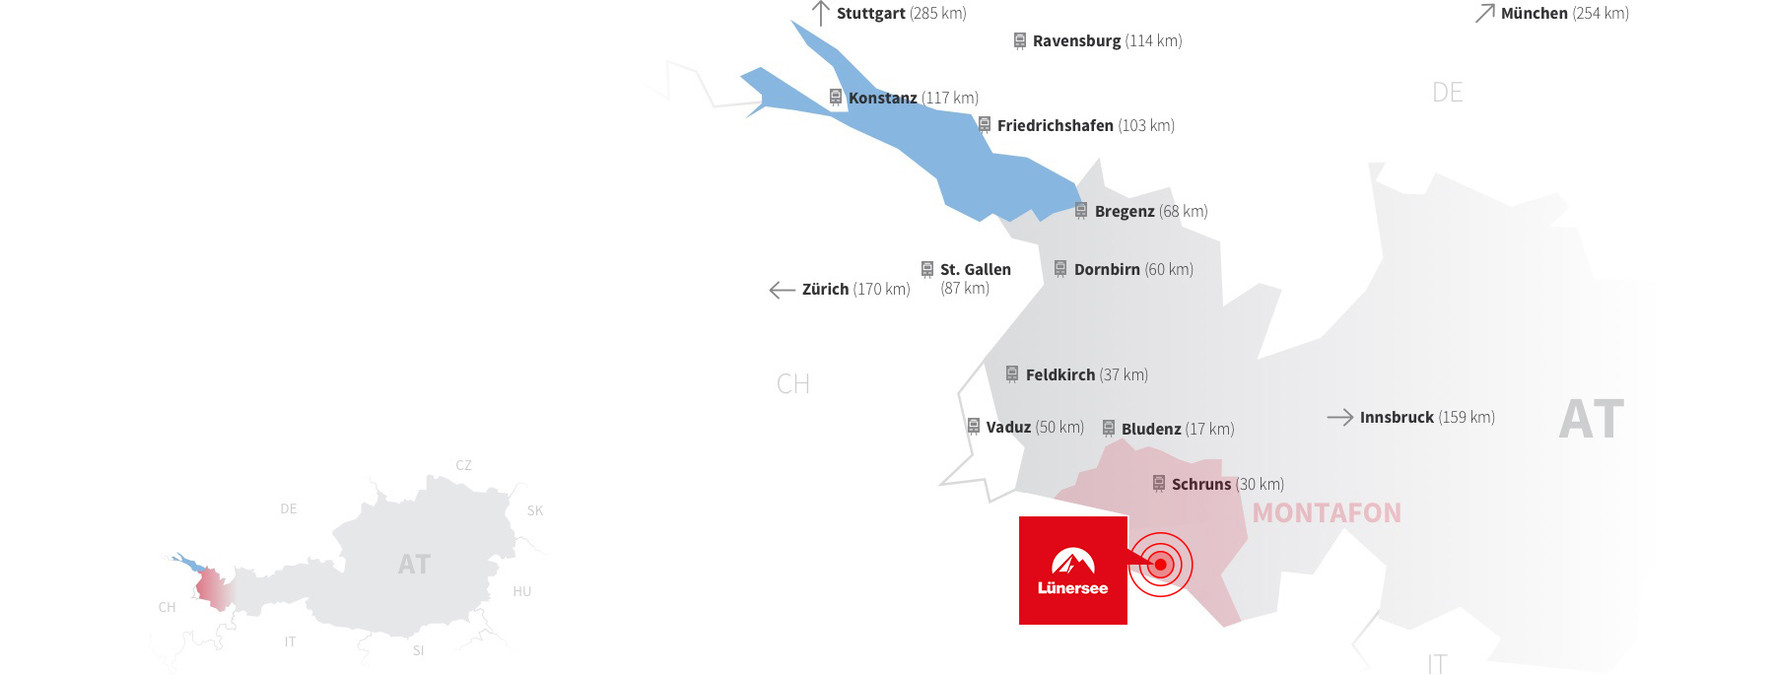 Anreisekarte (Bahn) zum Lünersee im Brandnertal | © Golm Silvretta Lünersee Tourismus GmbH Bregenz